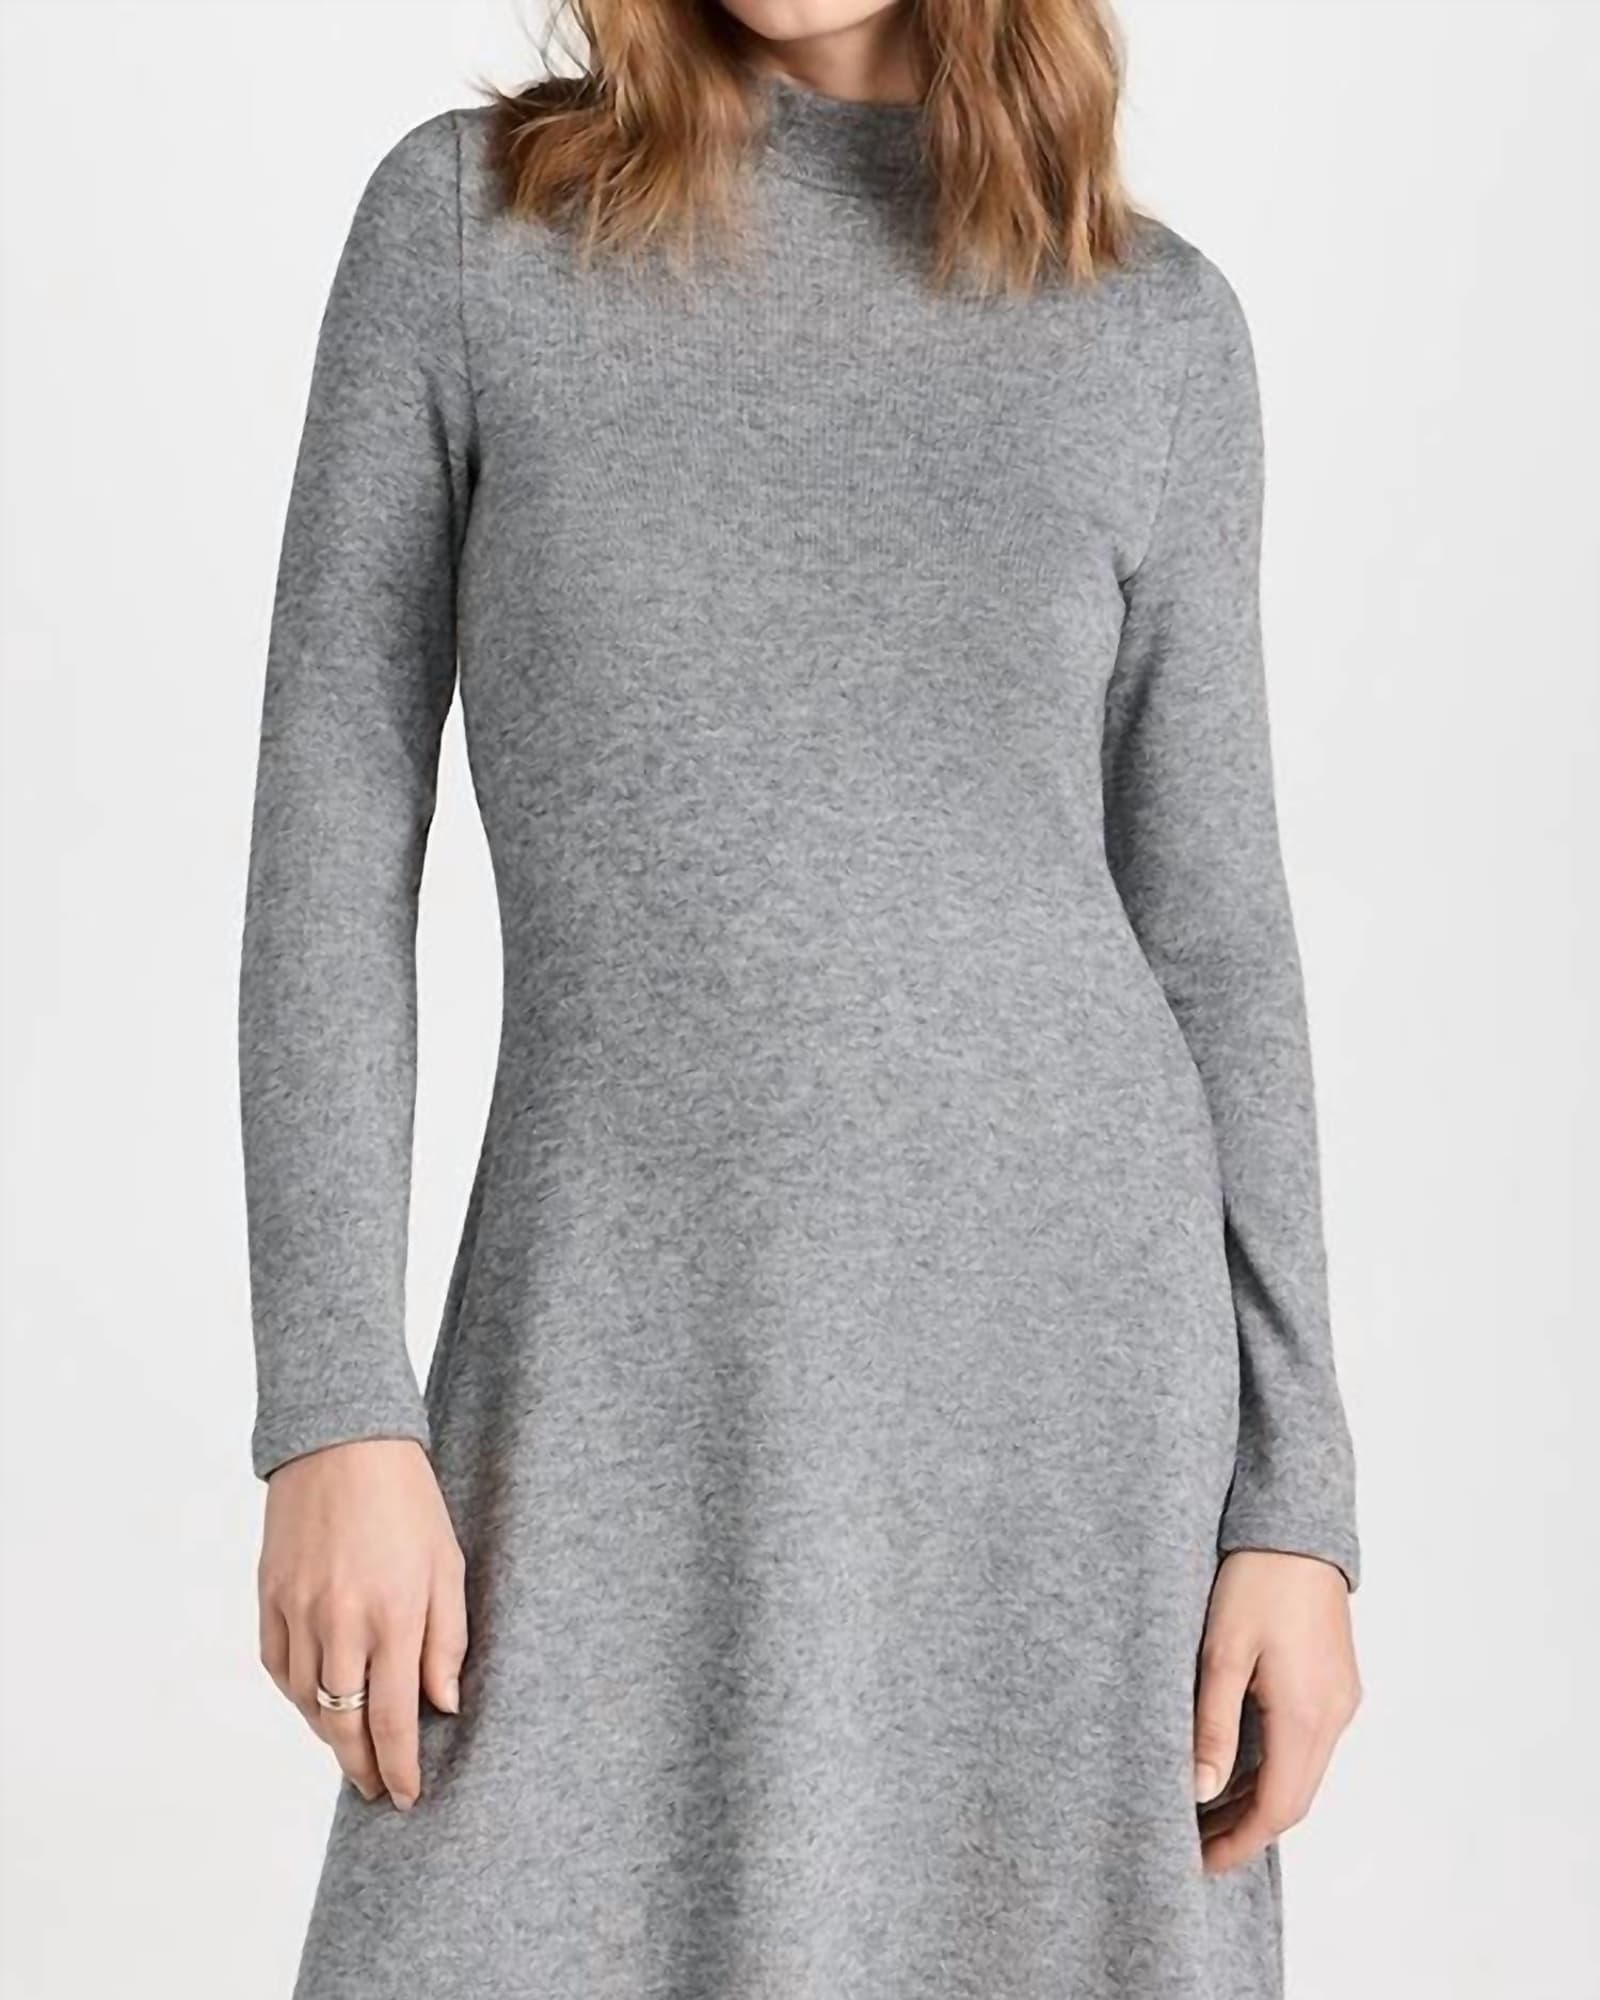 Long Sleeve Short Sweater Dress In Silver Dust | Silver Dust